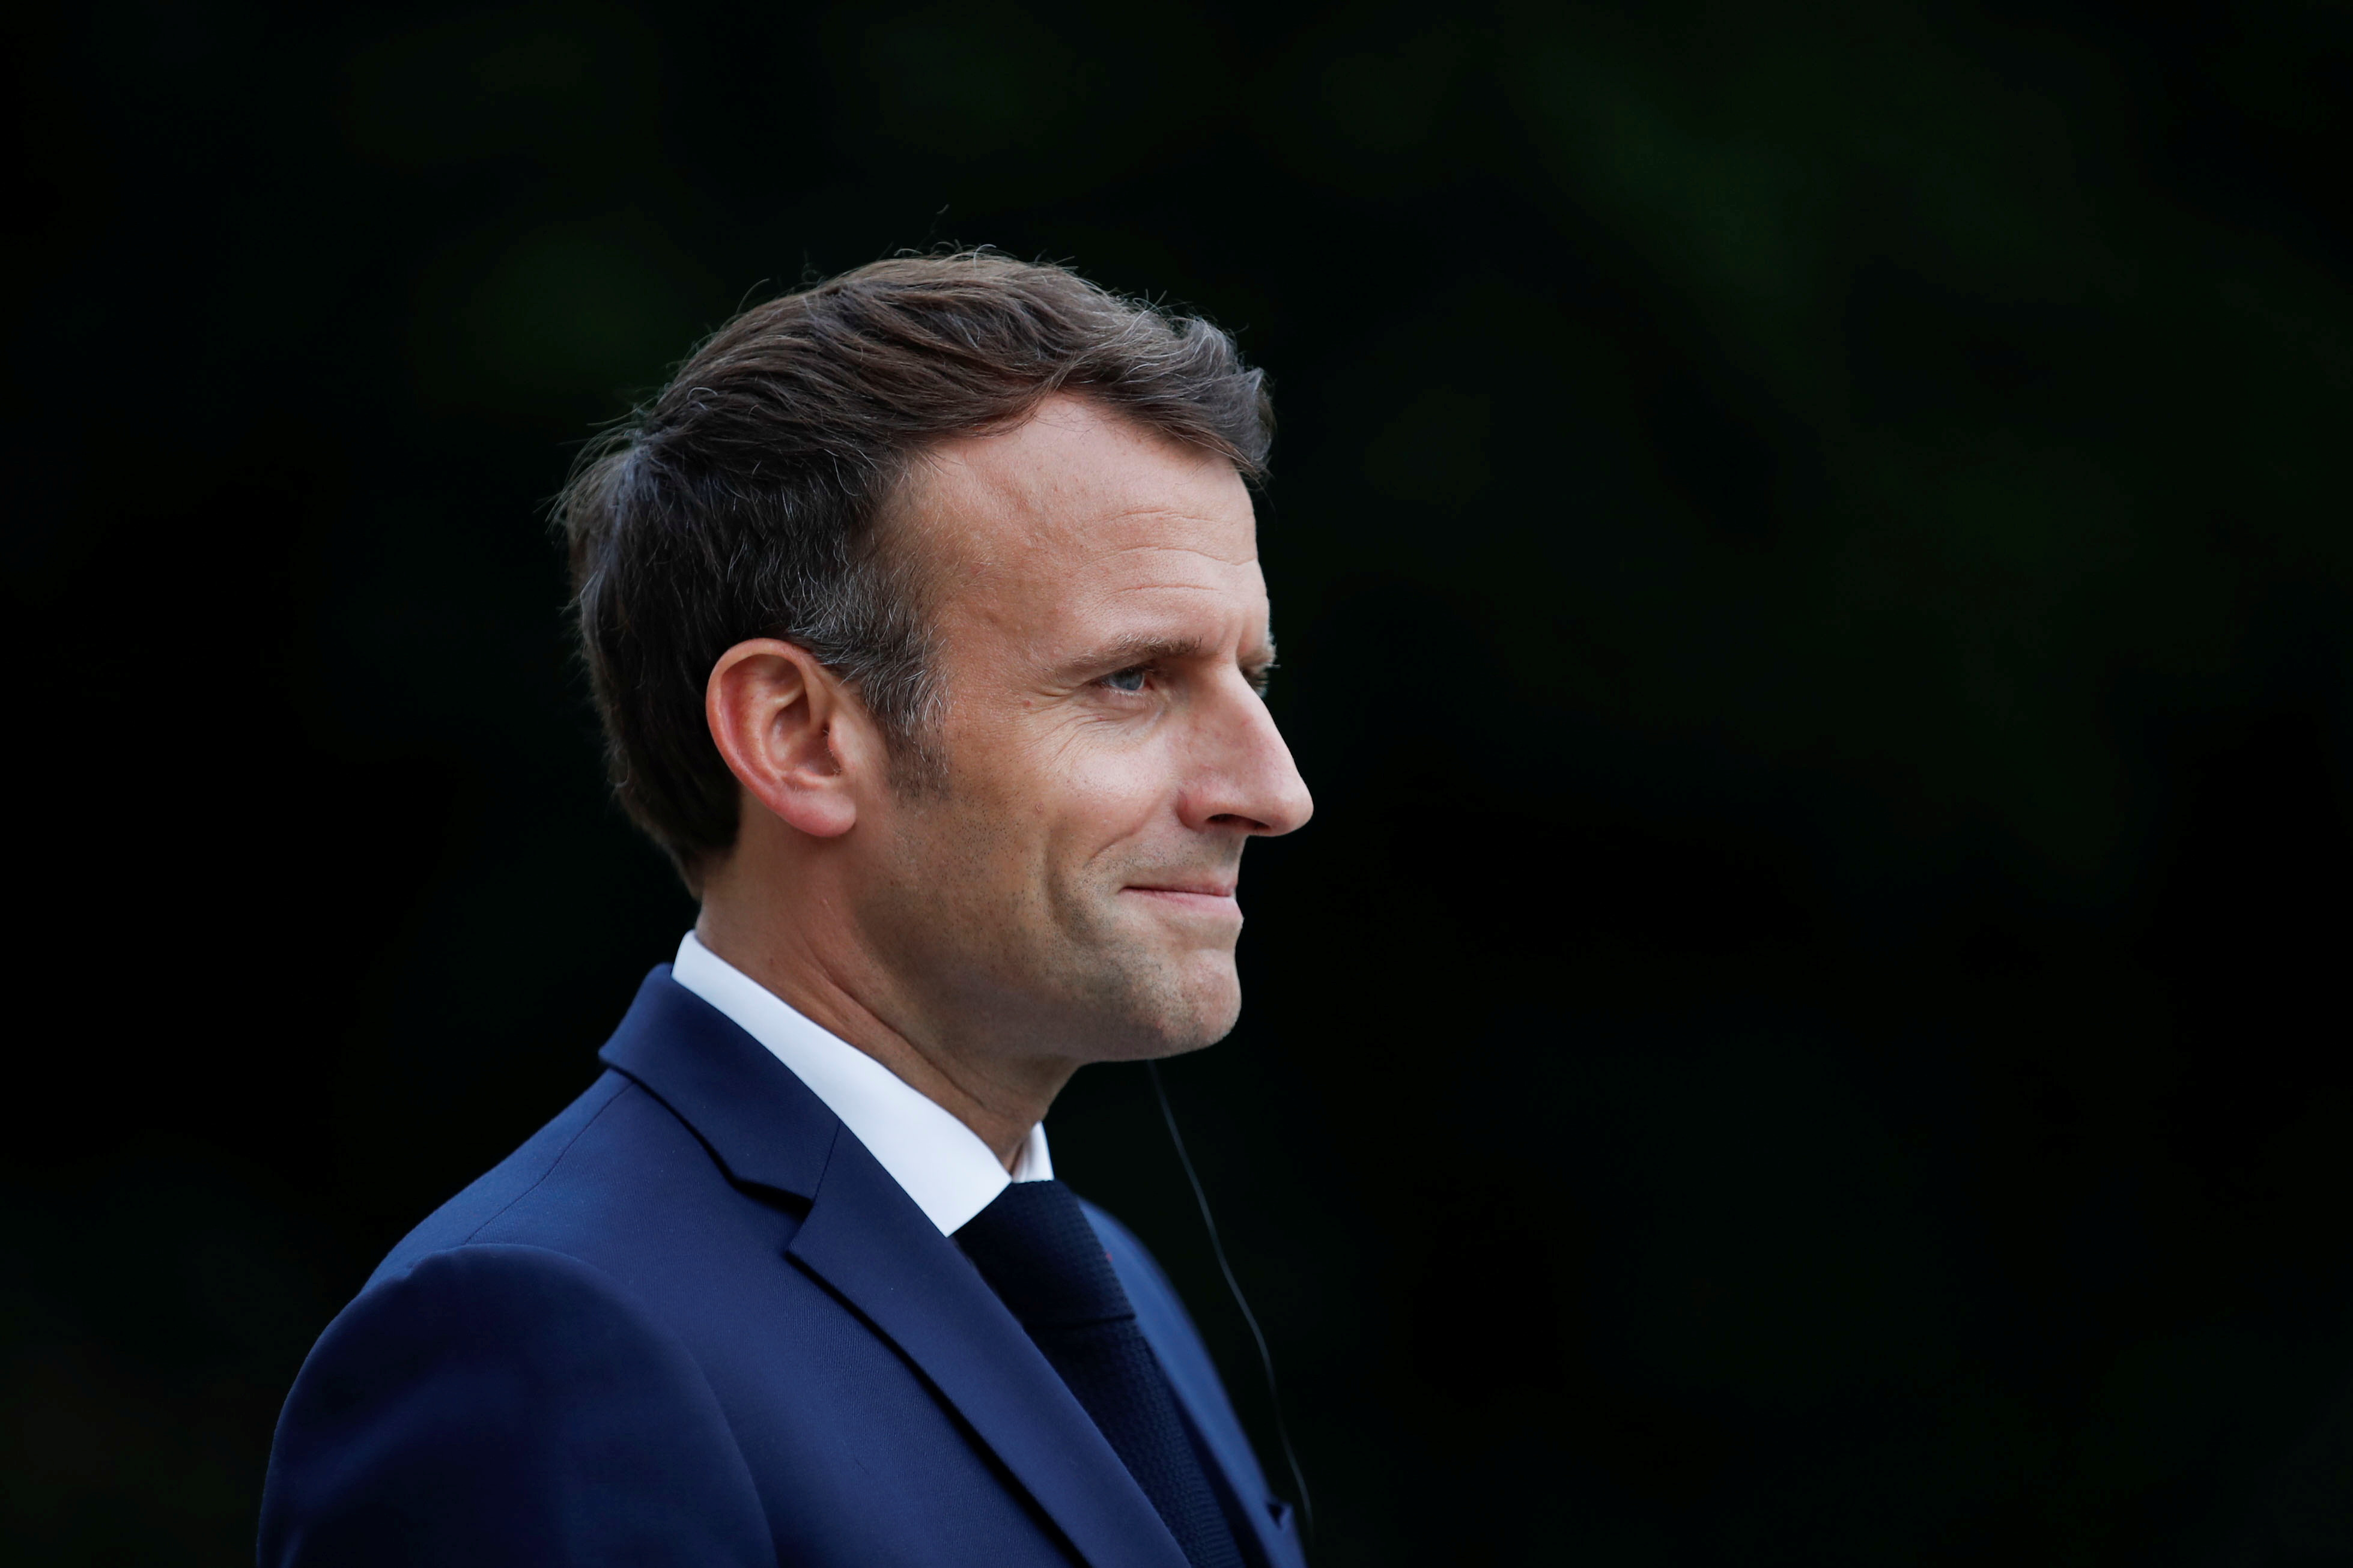 Pénurie de médicaments : Macron va présenter son plan pour relocaliser la production